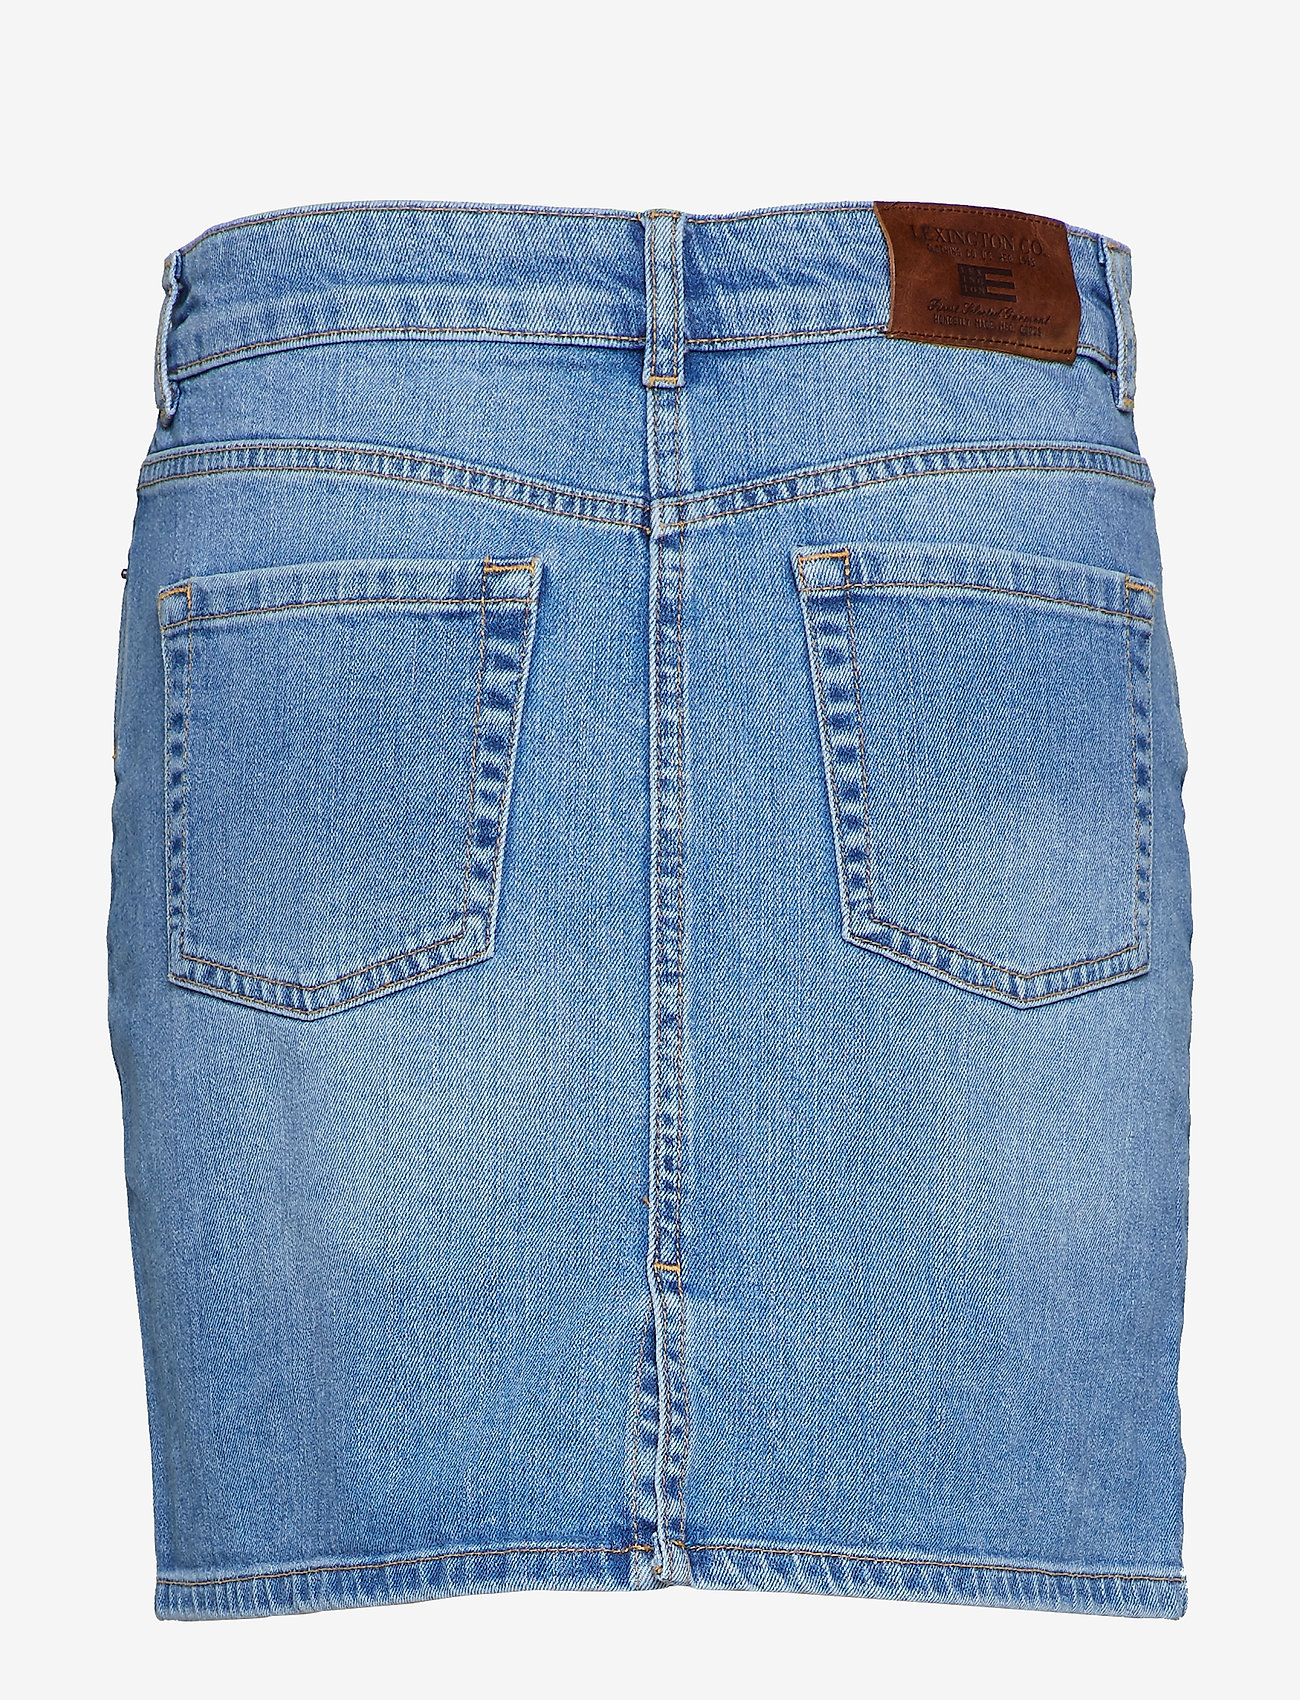 Lexington Clothing - Alexa Blue Denim Skirt - jeansrokken - lt blue denim - 1